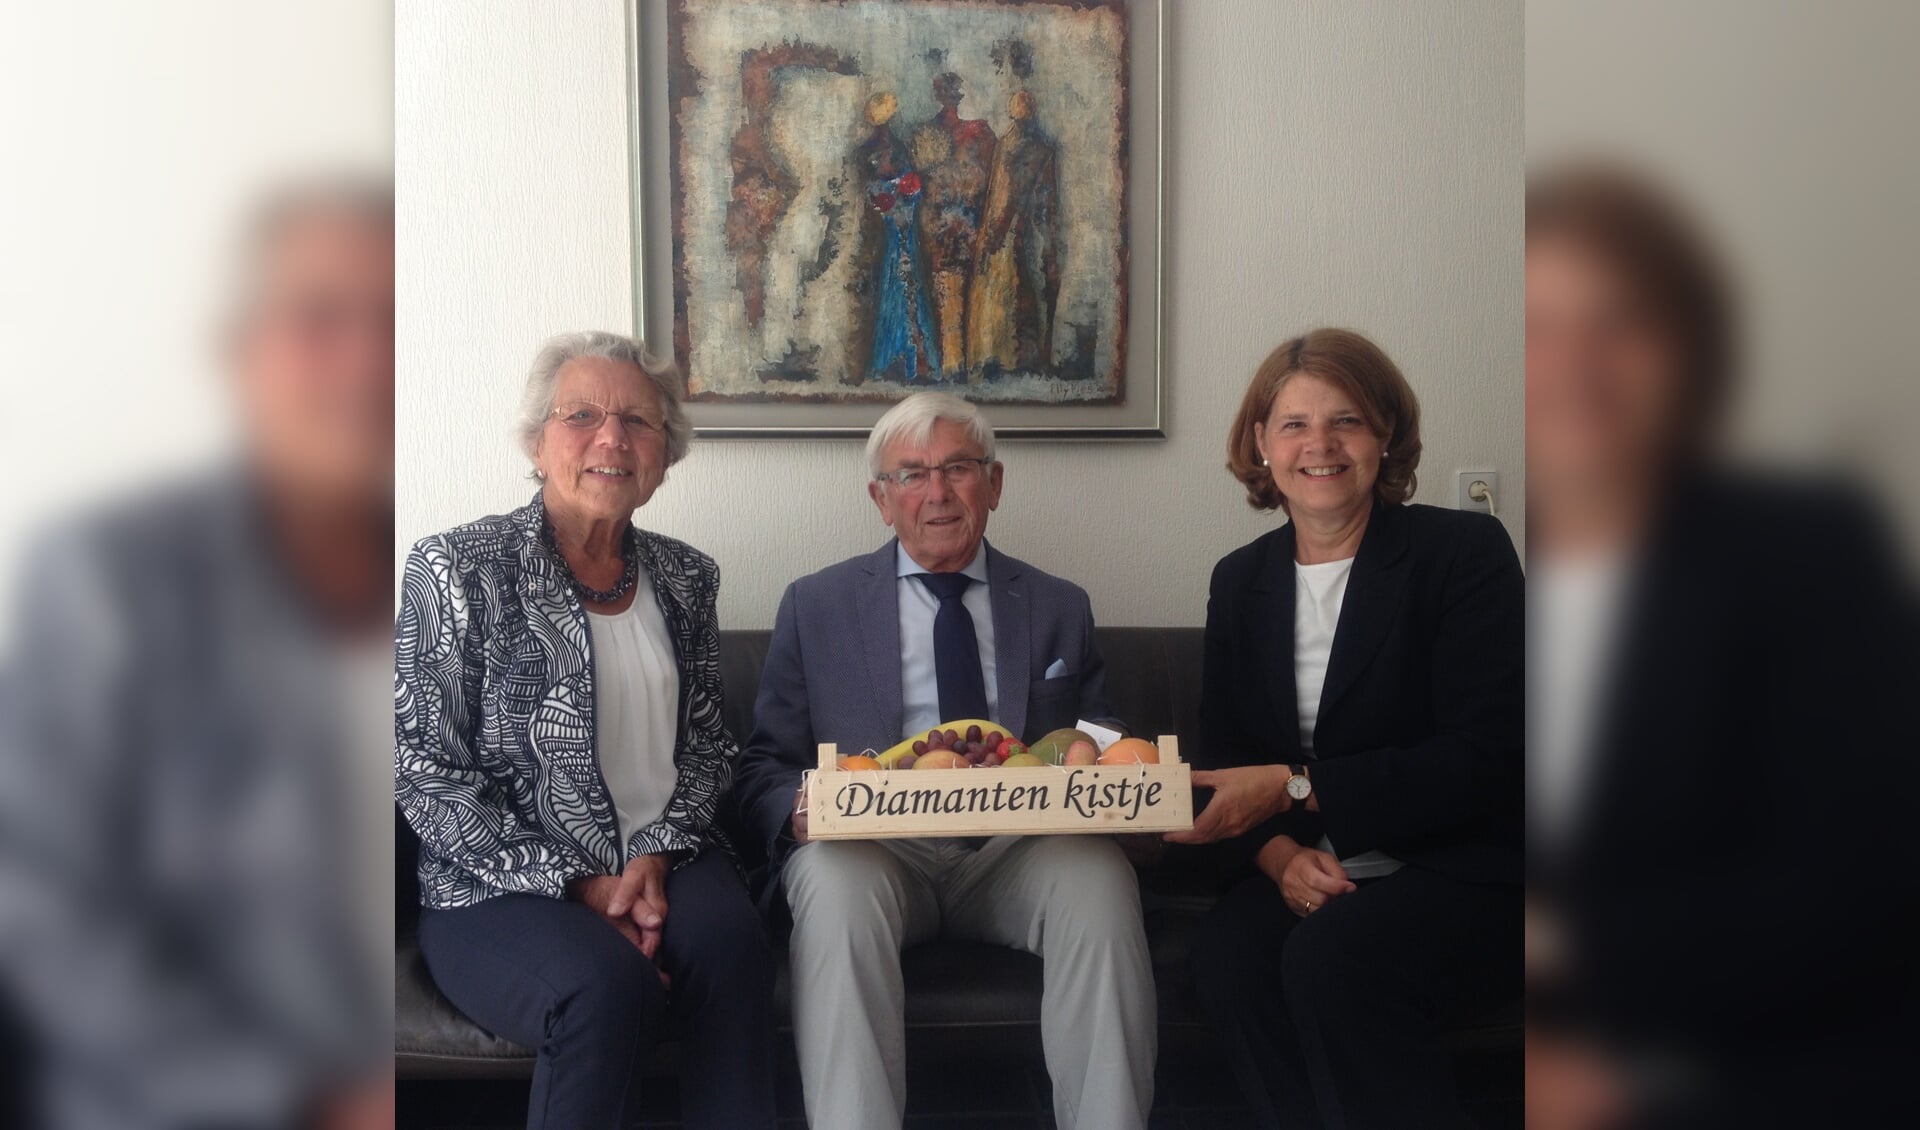 Op 24 mei waren de heer en mevrouw Boone - Van der Linde 60 jaar getrouwd. Burgemeester Marja van Bijsterveldt kwam bij het echtpaar op bezoek.